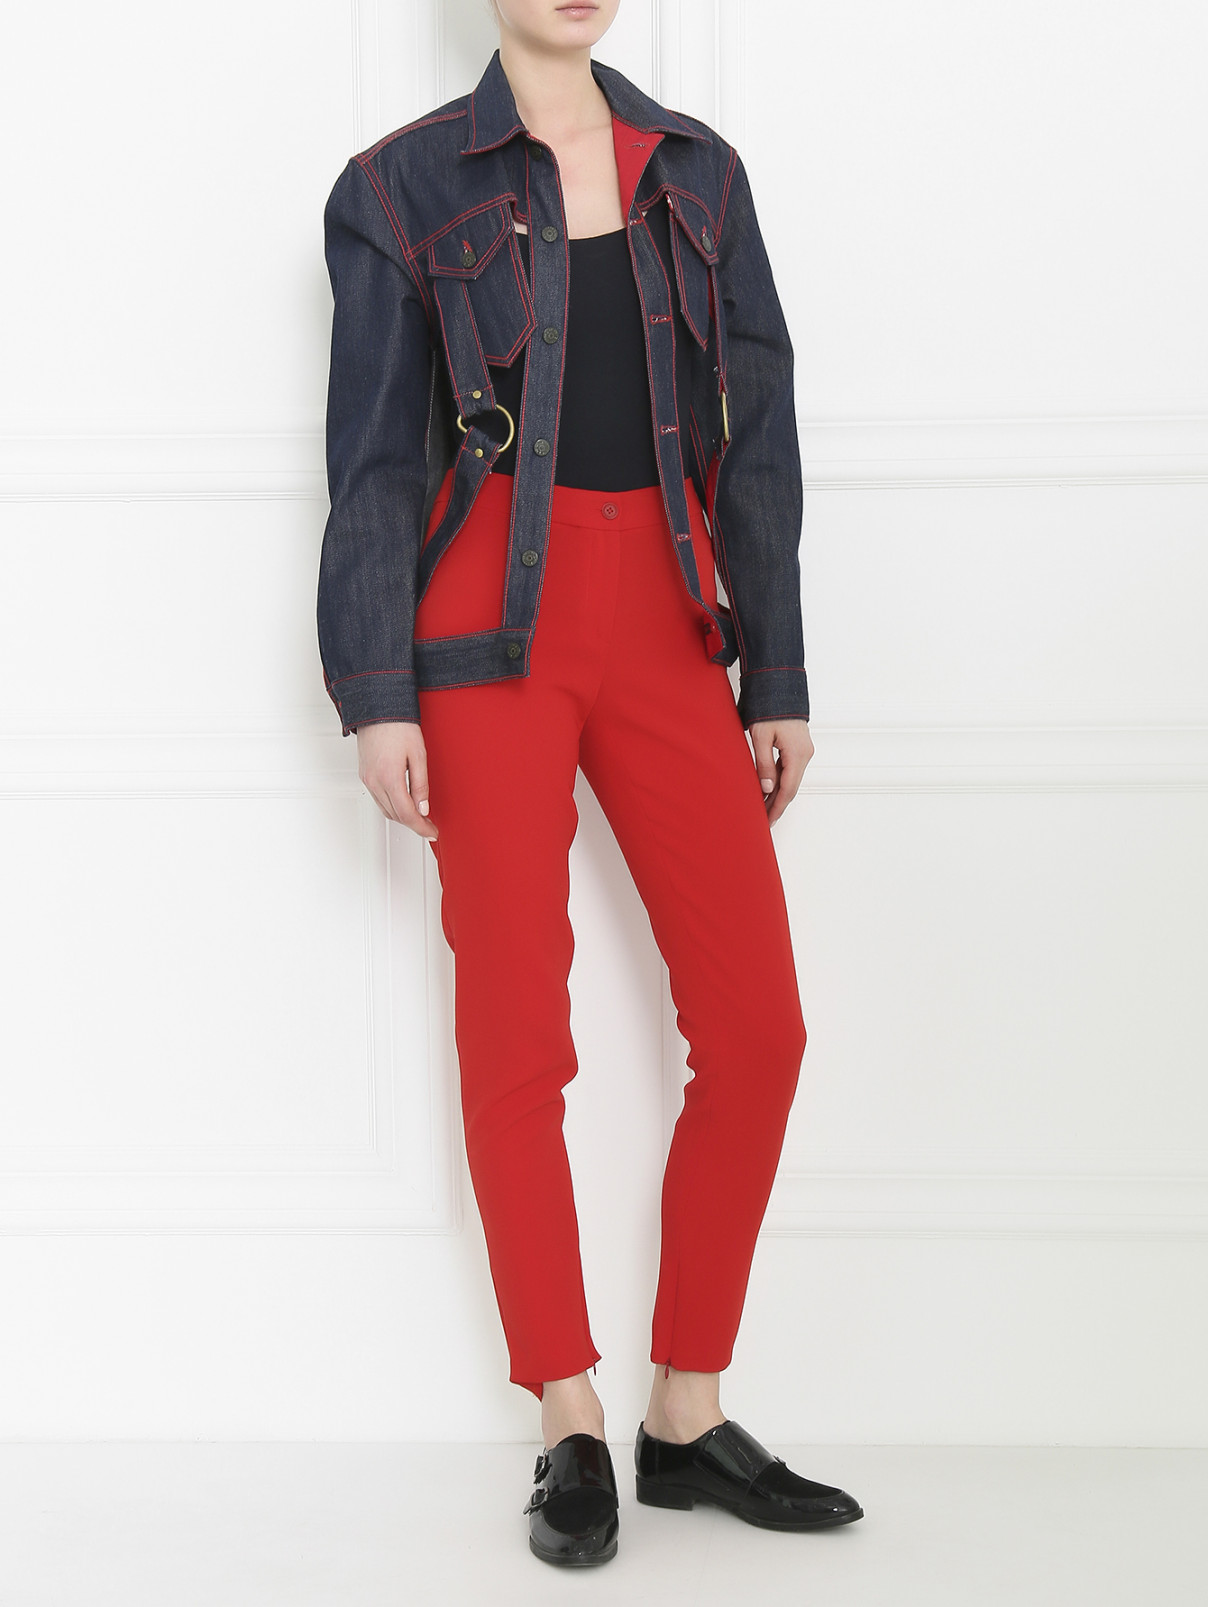 Куртка из денима с декоративными элементами Jean Paul Gaultier  –  Модель Общий вид  – Цвет:  Синий